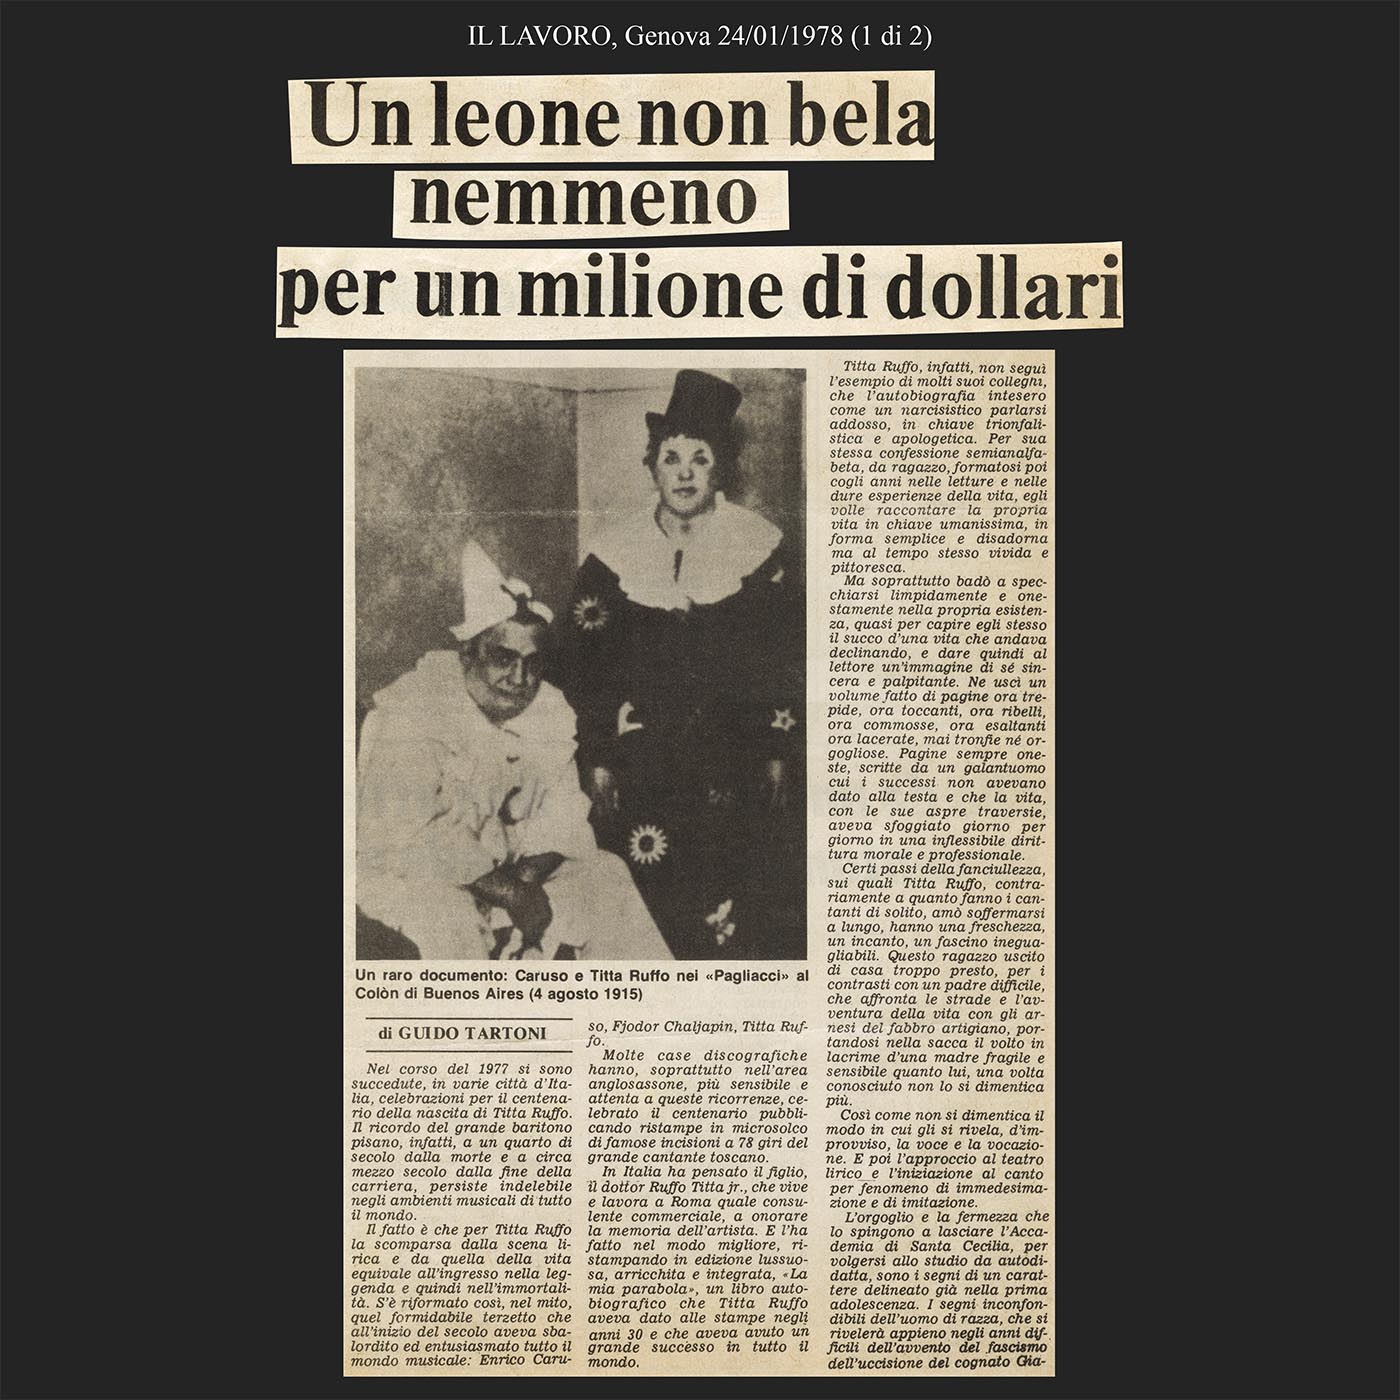 IL LAVORO, Genova 24/01/1978 (1di2)